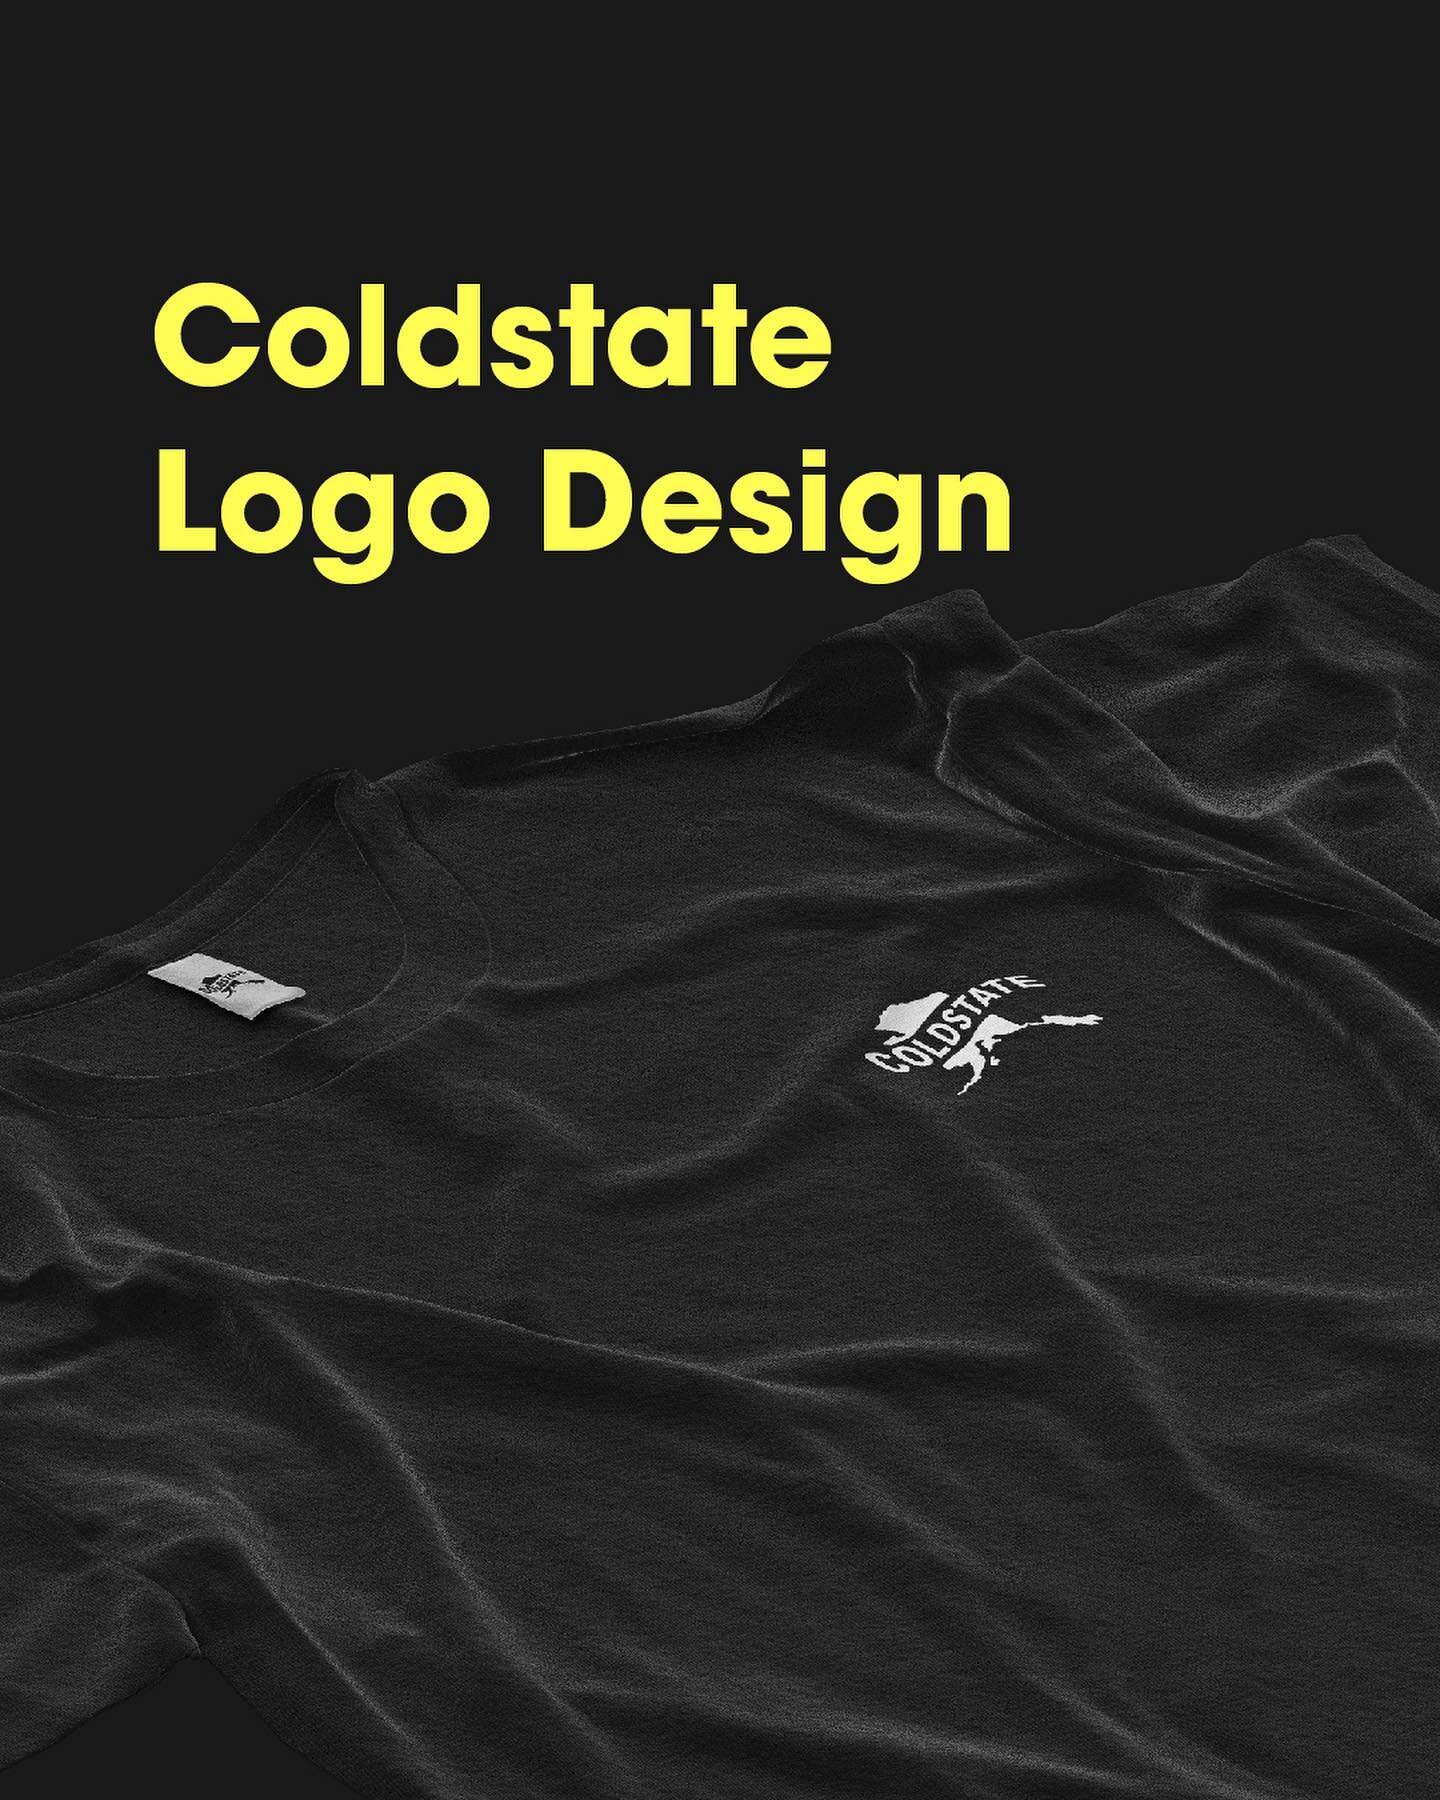 Het koude en prachtige Alaska vormde de basis voor dit opvallende en unieke logo!❄️

&lsquo;ColdState&rsquo; is het nieuwste kledingmerk op de markt en natuurlijk mochten wij hier een groot deel vanuit maken🔥💪🏼

#logodesign #kledingmerk #creativit